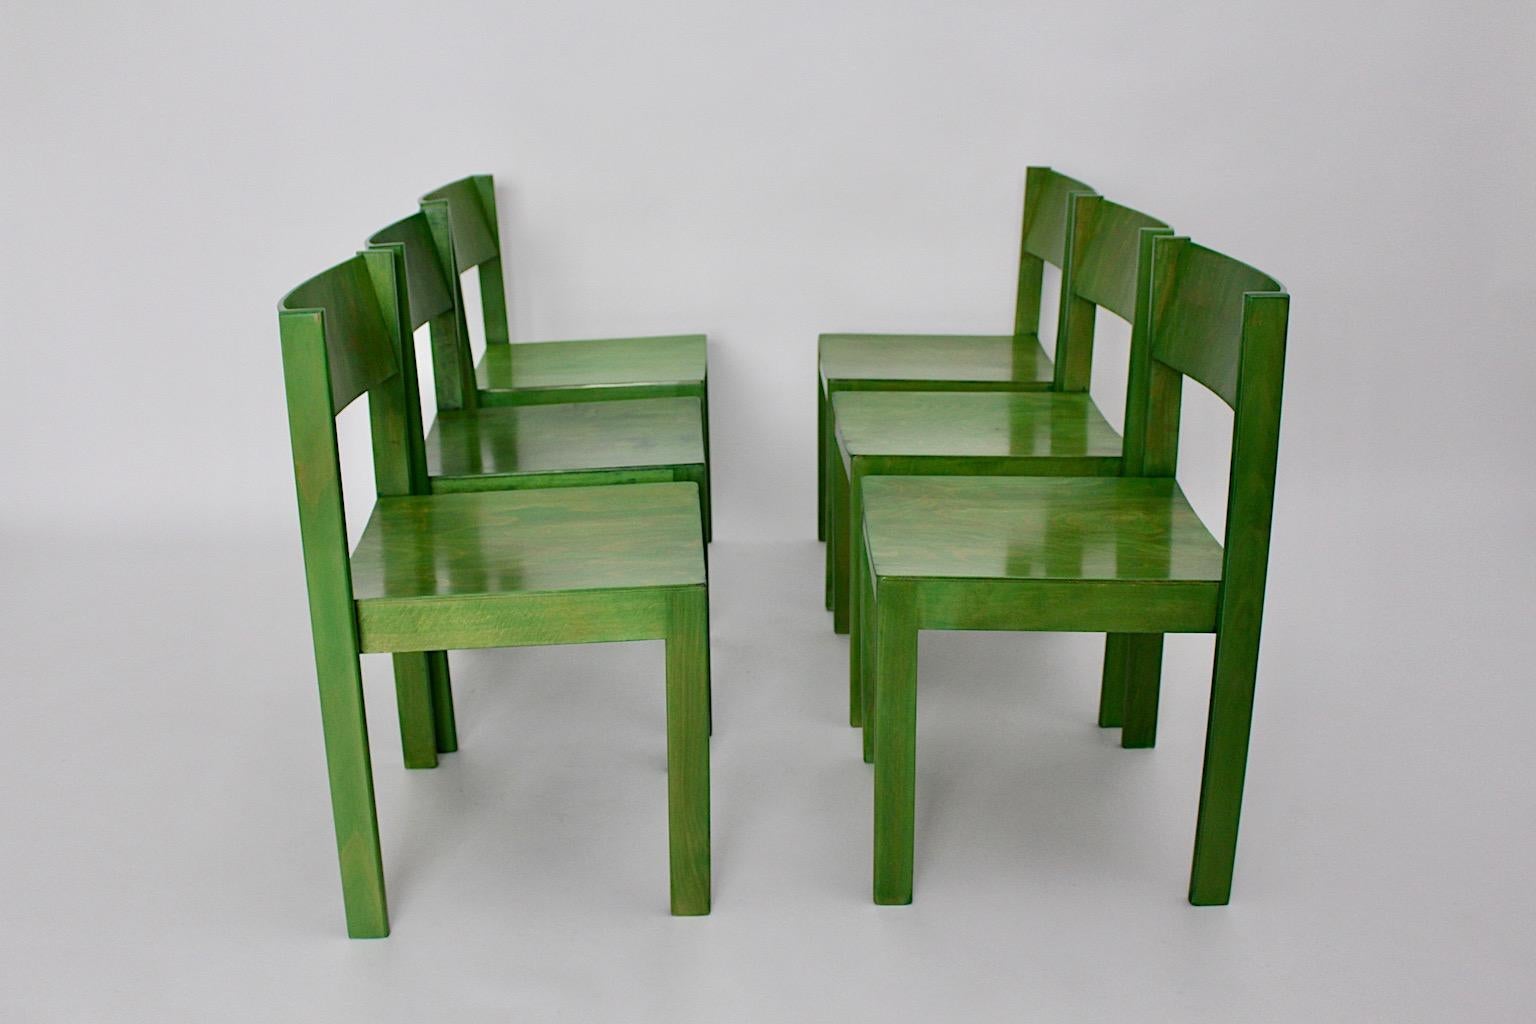 Mid-Century Modern Satz von sechs grünen Vintage Esszimmerstühle oder Stühle, die entworfen und hergestellt wurden in Wien, Österreich, 1950er Jahre.
Die stabilen und bequemen Esszimmerstühle zeichnen sich durch ihre schöne grüne Farbe aus und sind